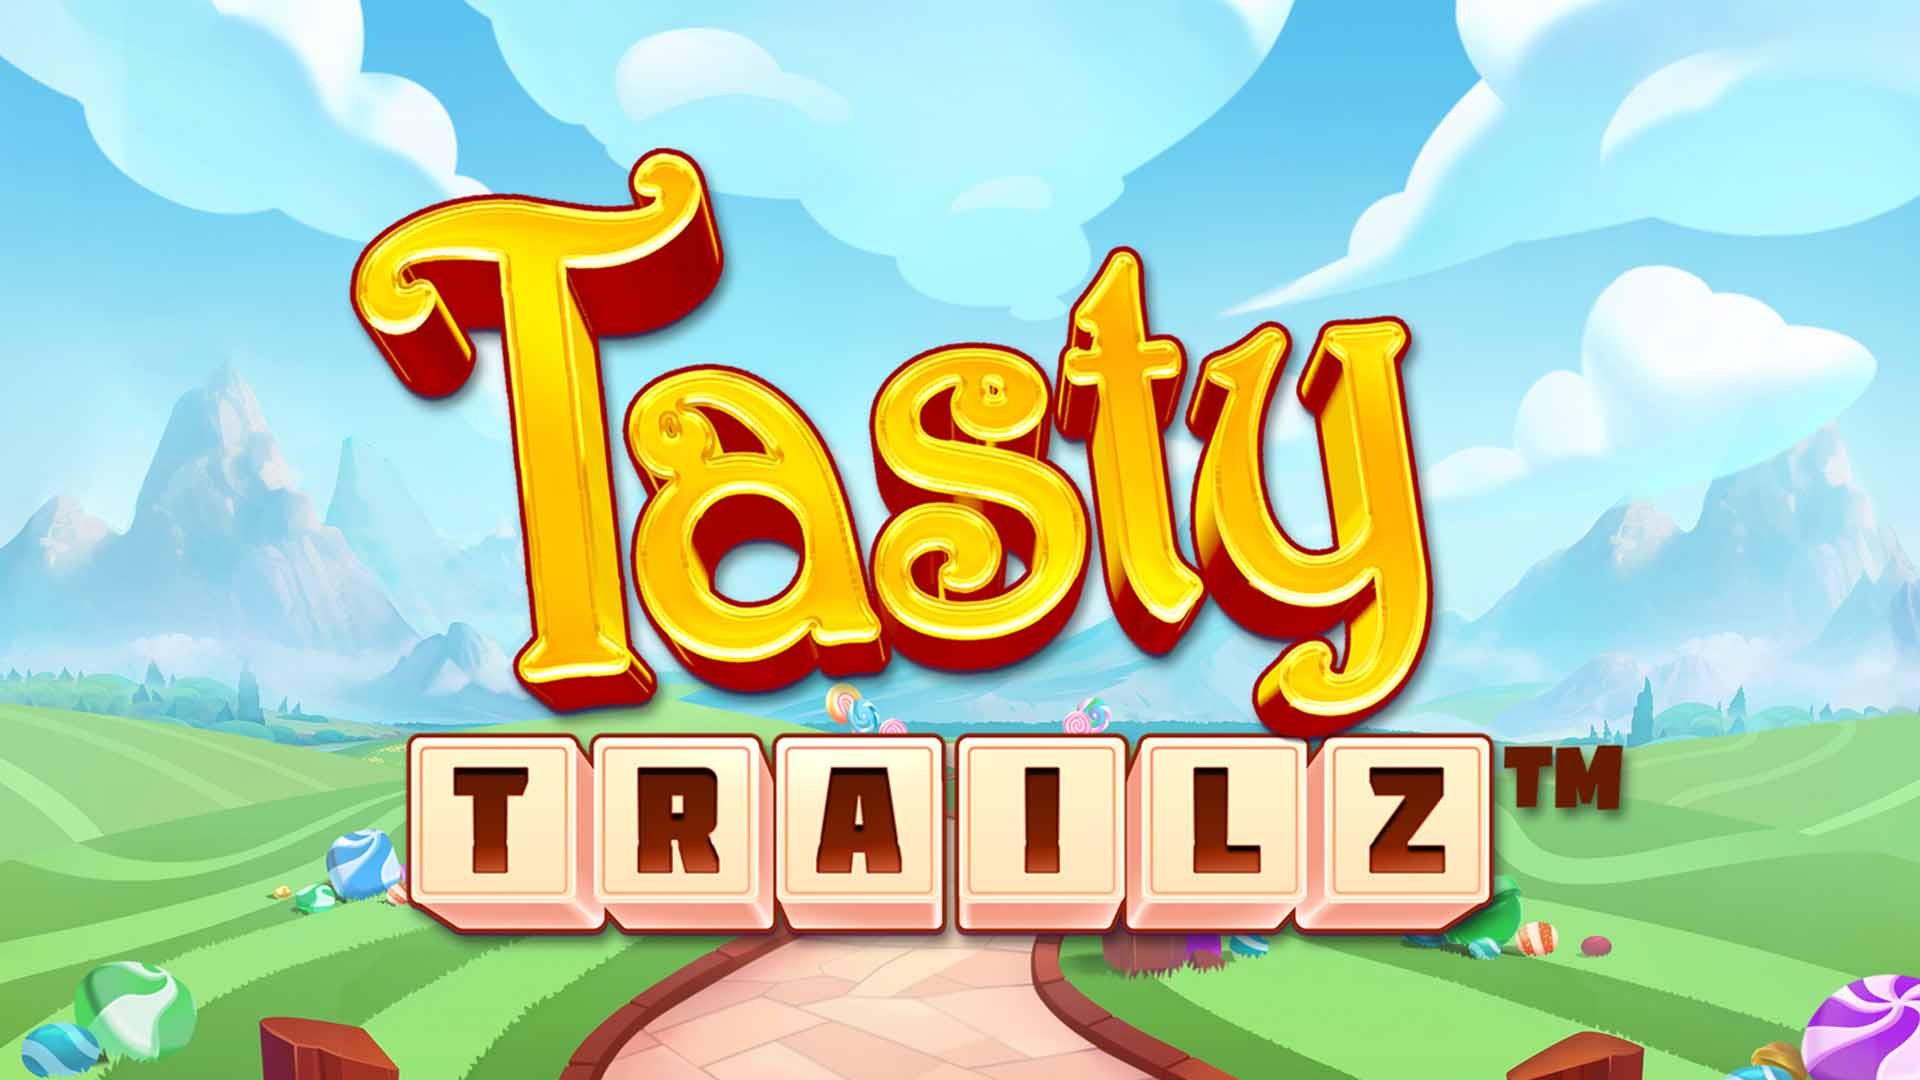 Tasty Trailz